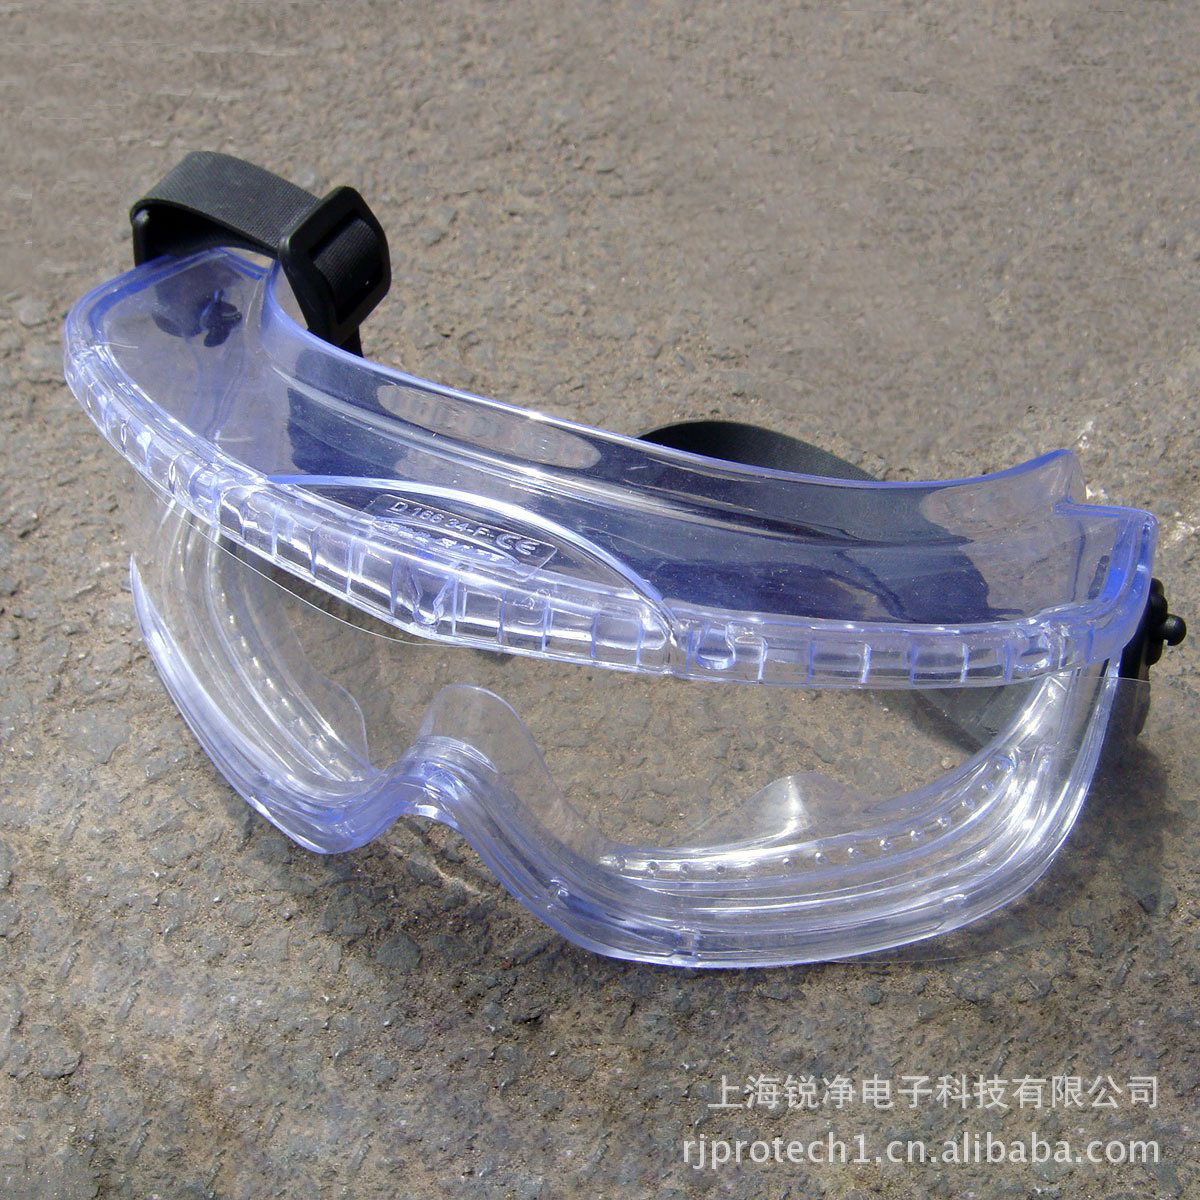 mro消耗品,易耗品 劳保,防护用品 防护眼镜,眼罩 霍尼韦尔/斯博瑞安v